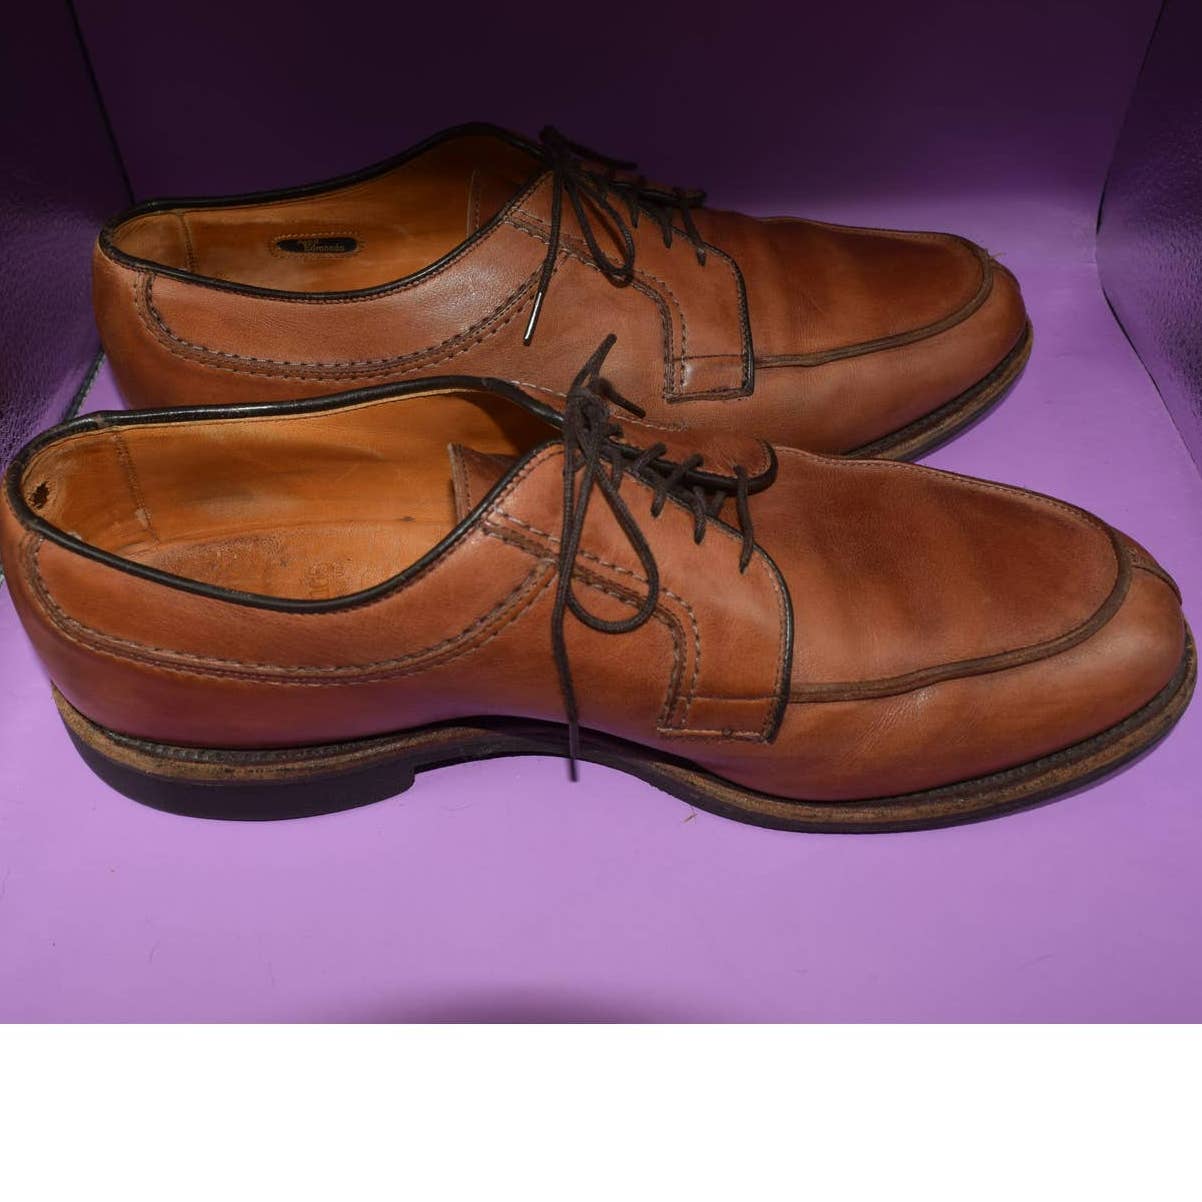 Allen Edmonds Medium Brown Leather Derby - 9.5